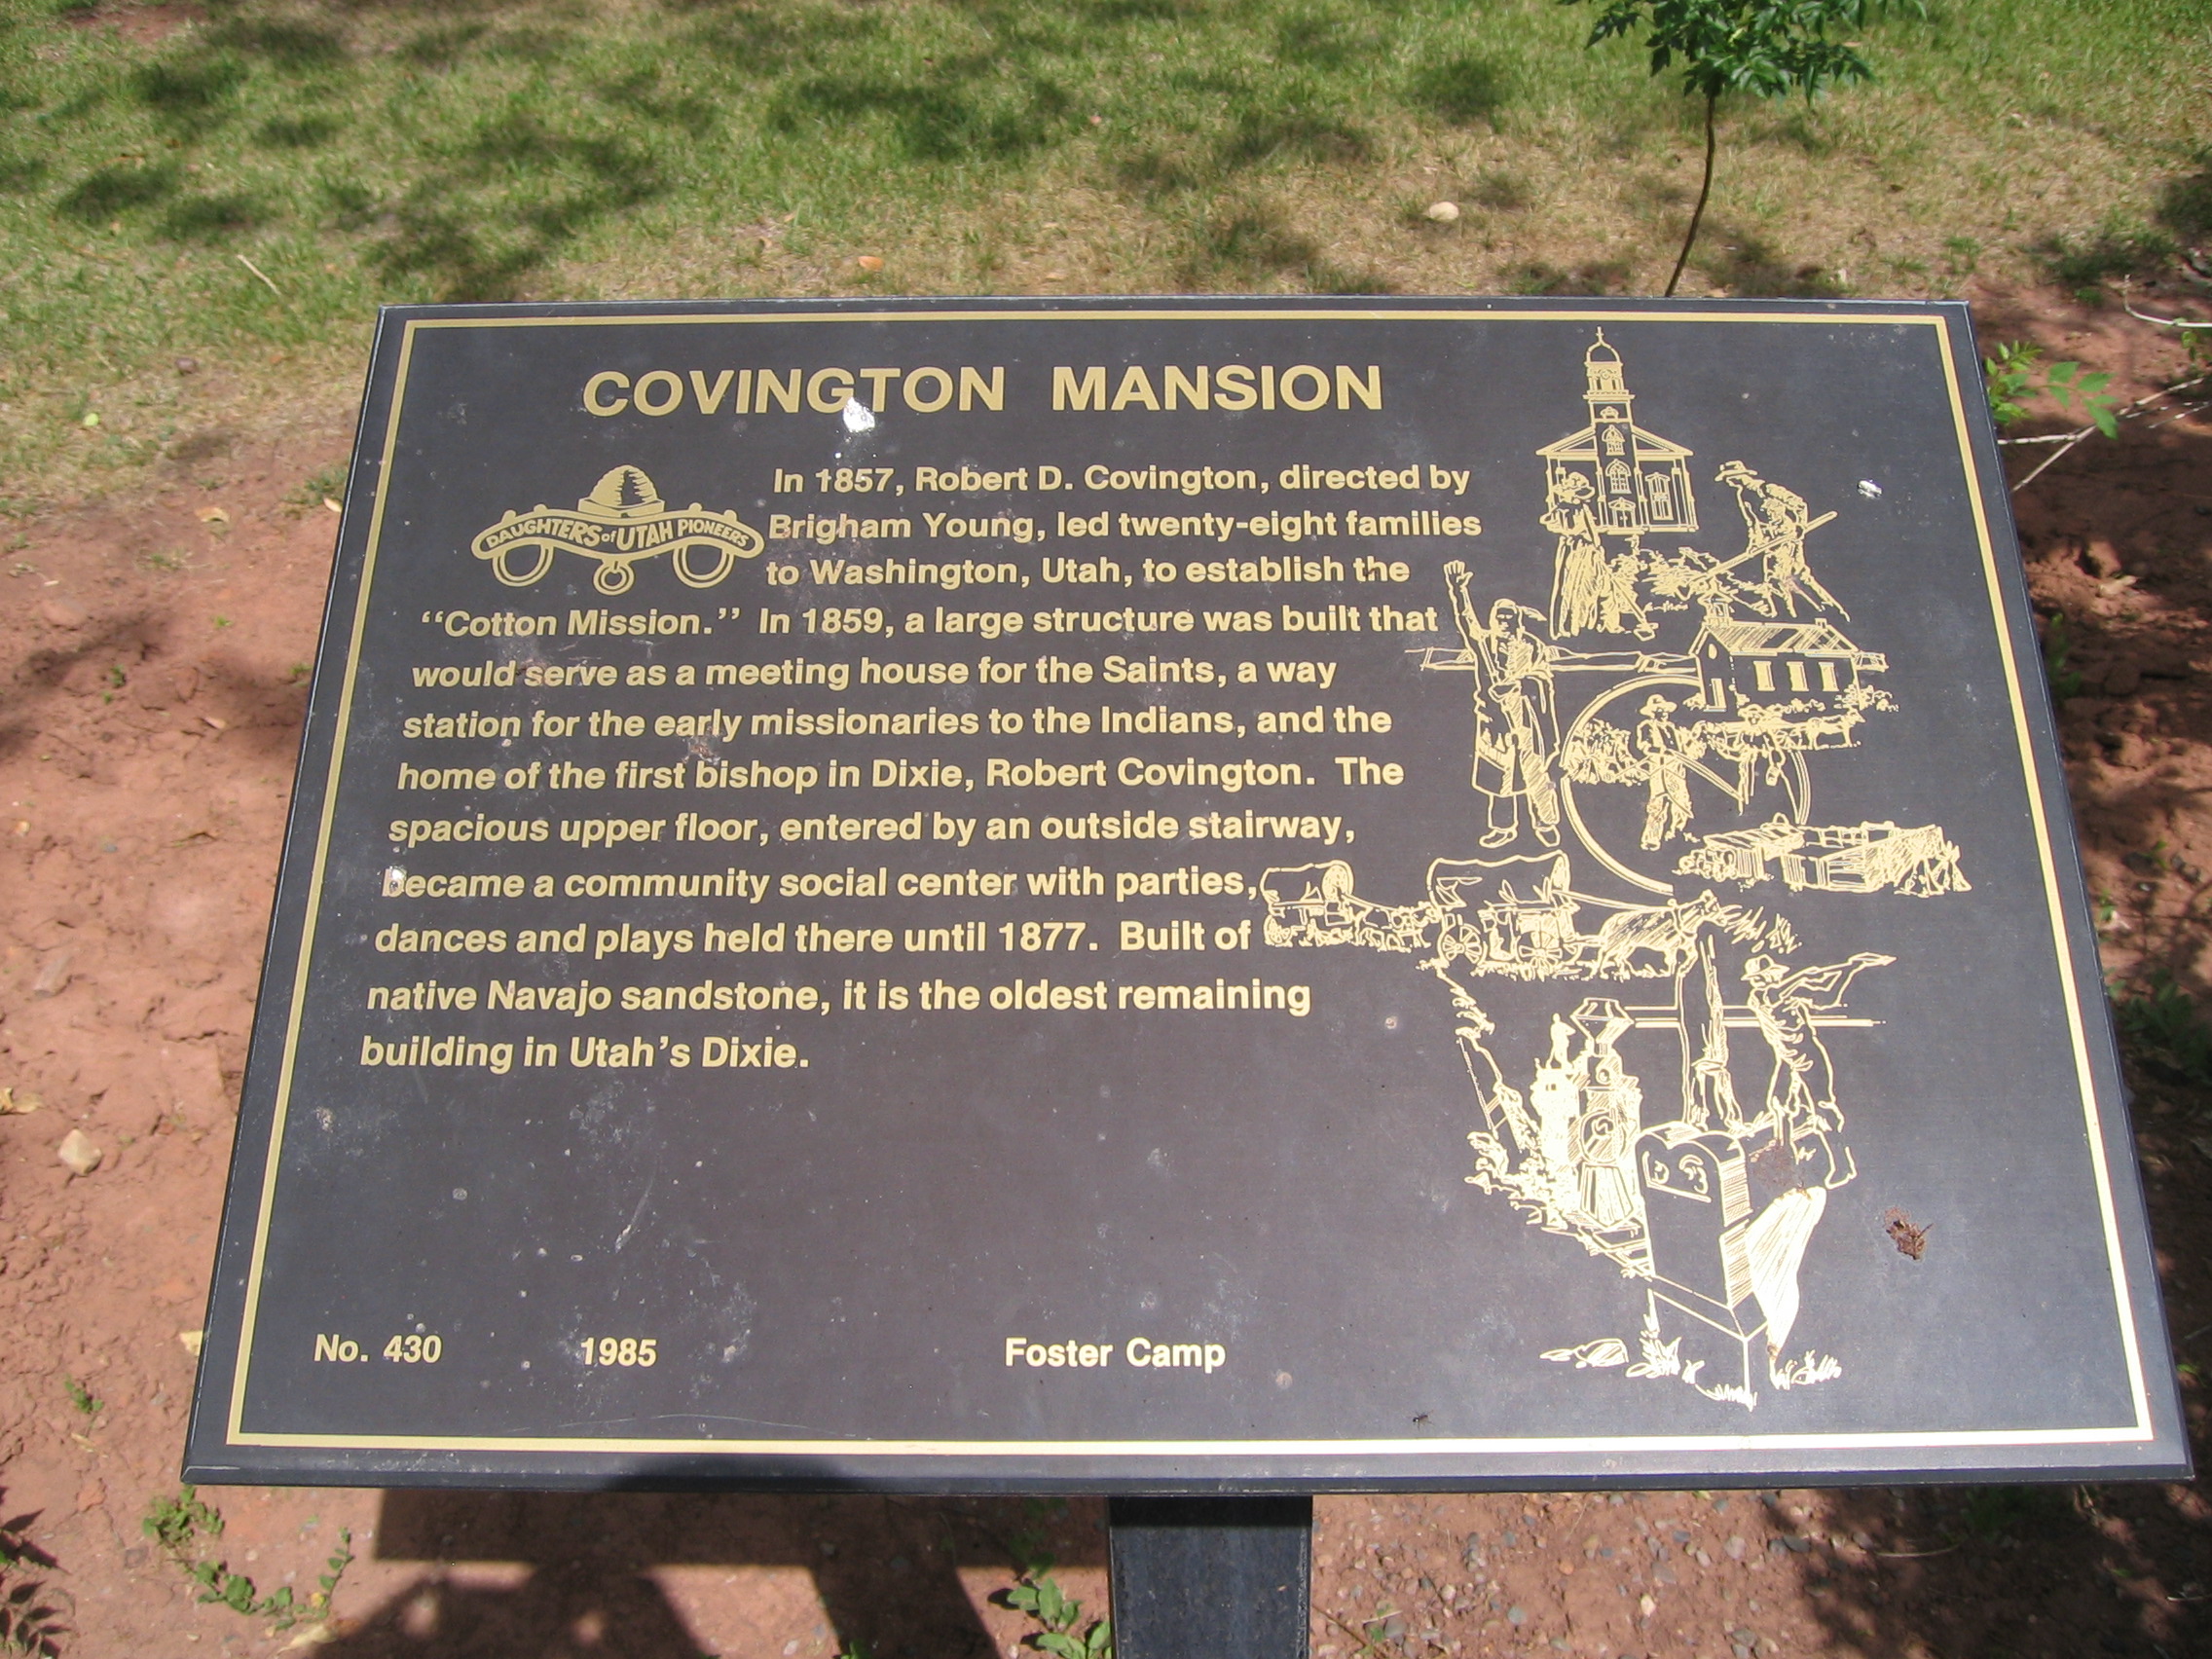 WCHS-00123 The Covington Mansion plaque